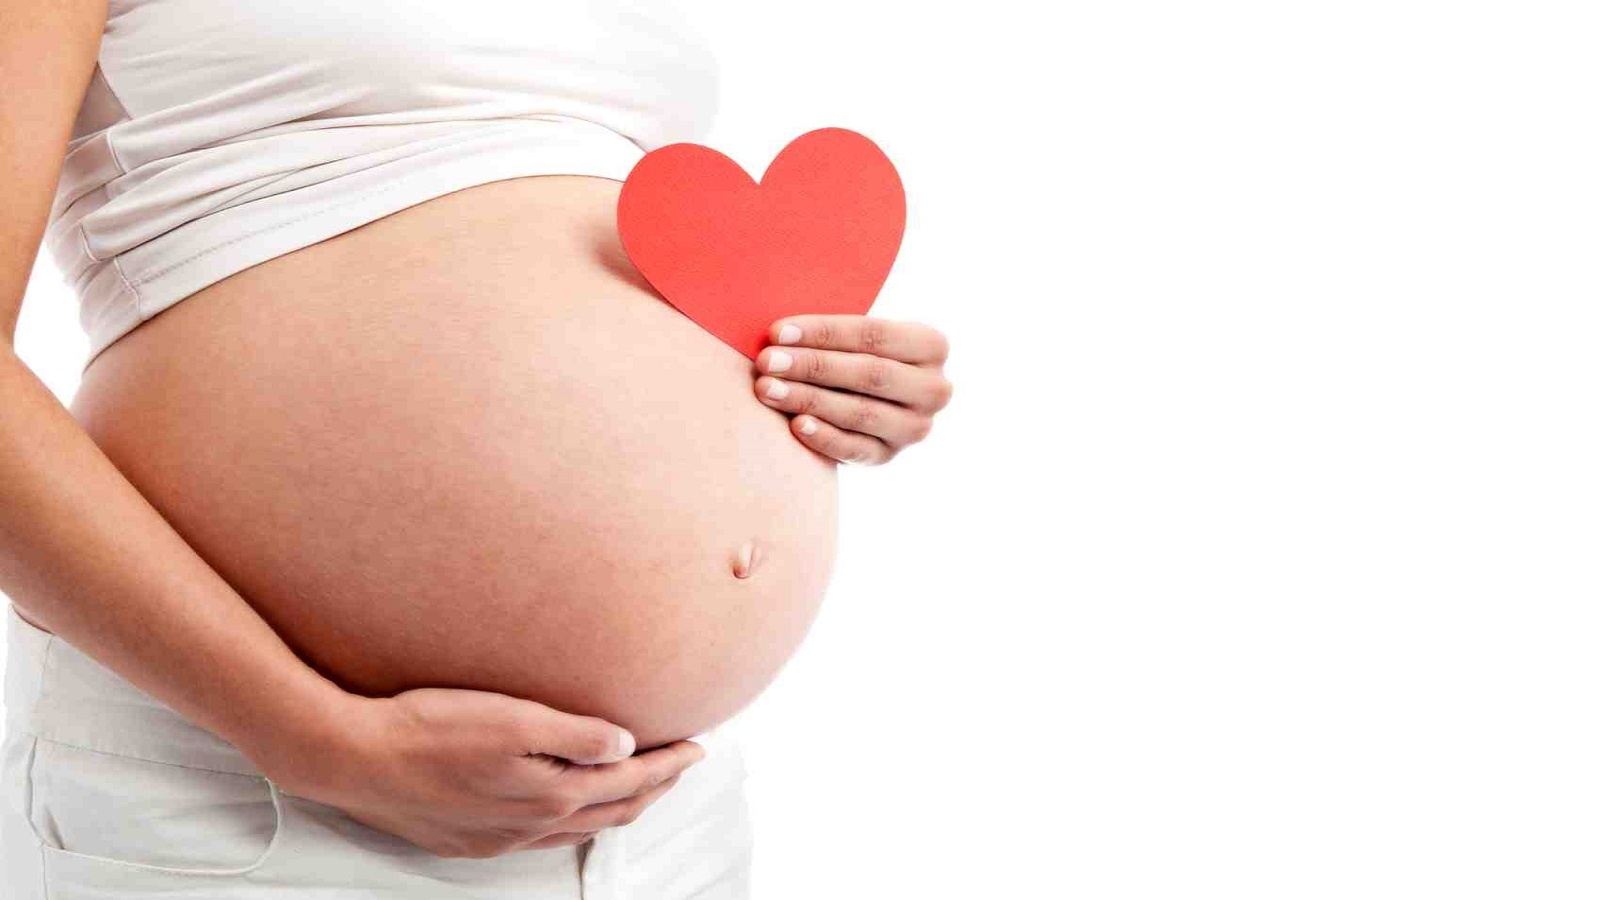 Bé phản ứng nhanh với tác động từ phía trước cơ thể và lưng, đây là một dấu hiệu thai nhi thông minh từ trong bụng mẹ?
